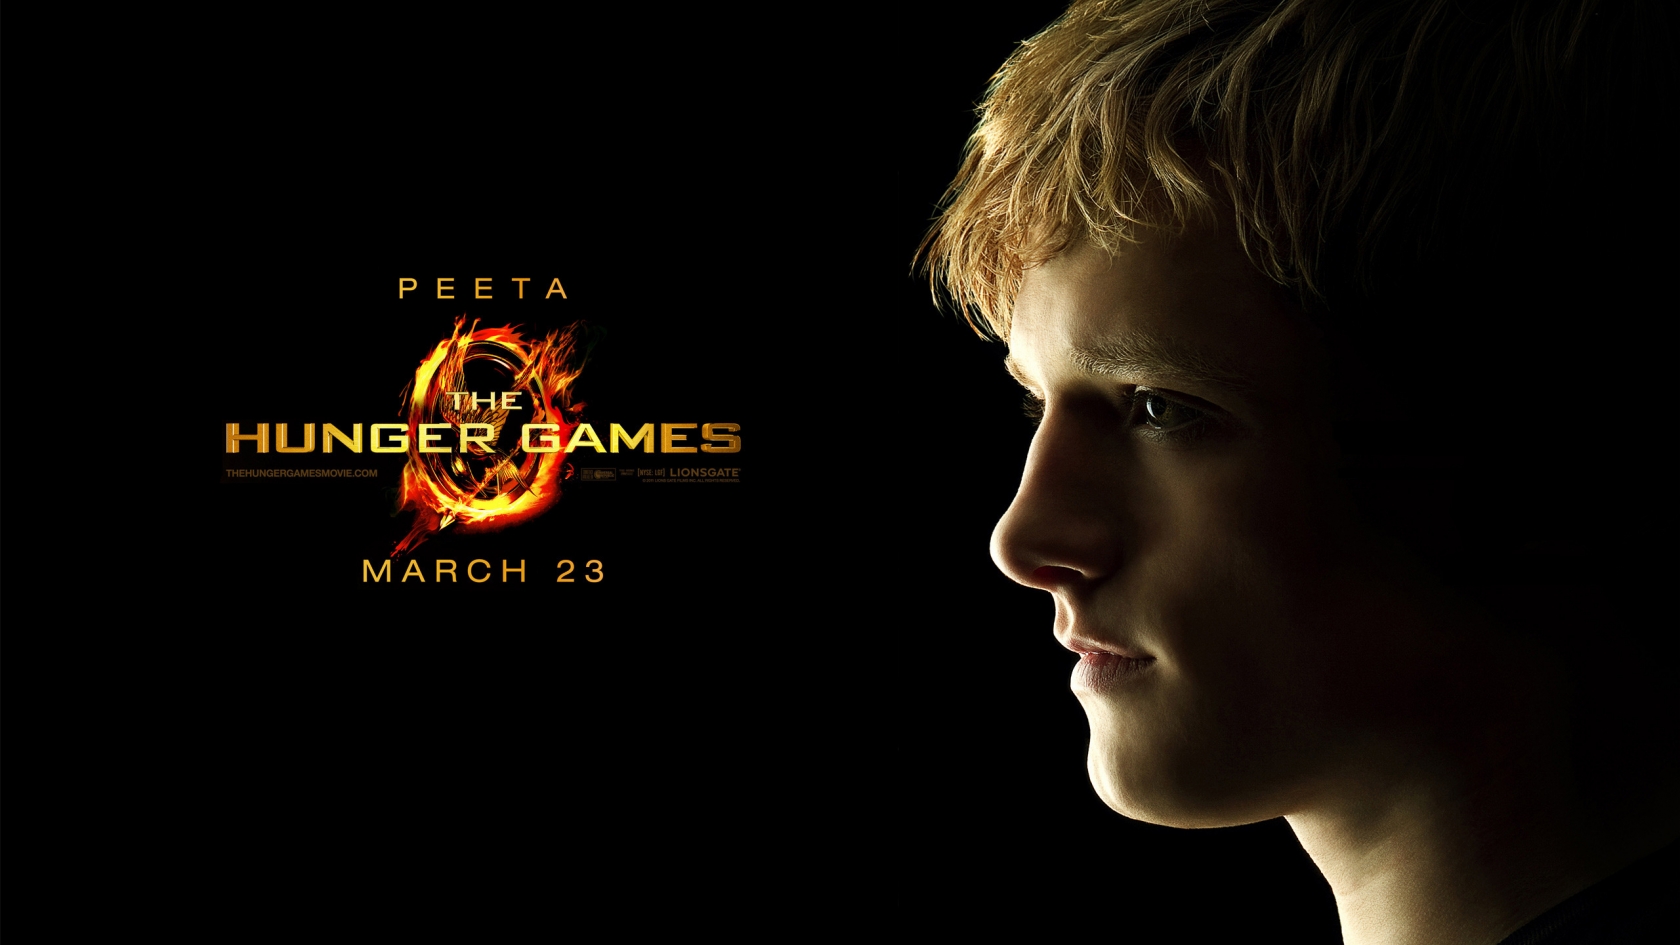 The Hunger Games Peeta for 1680 x 945 HDTV resolution